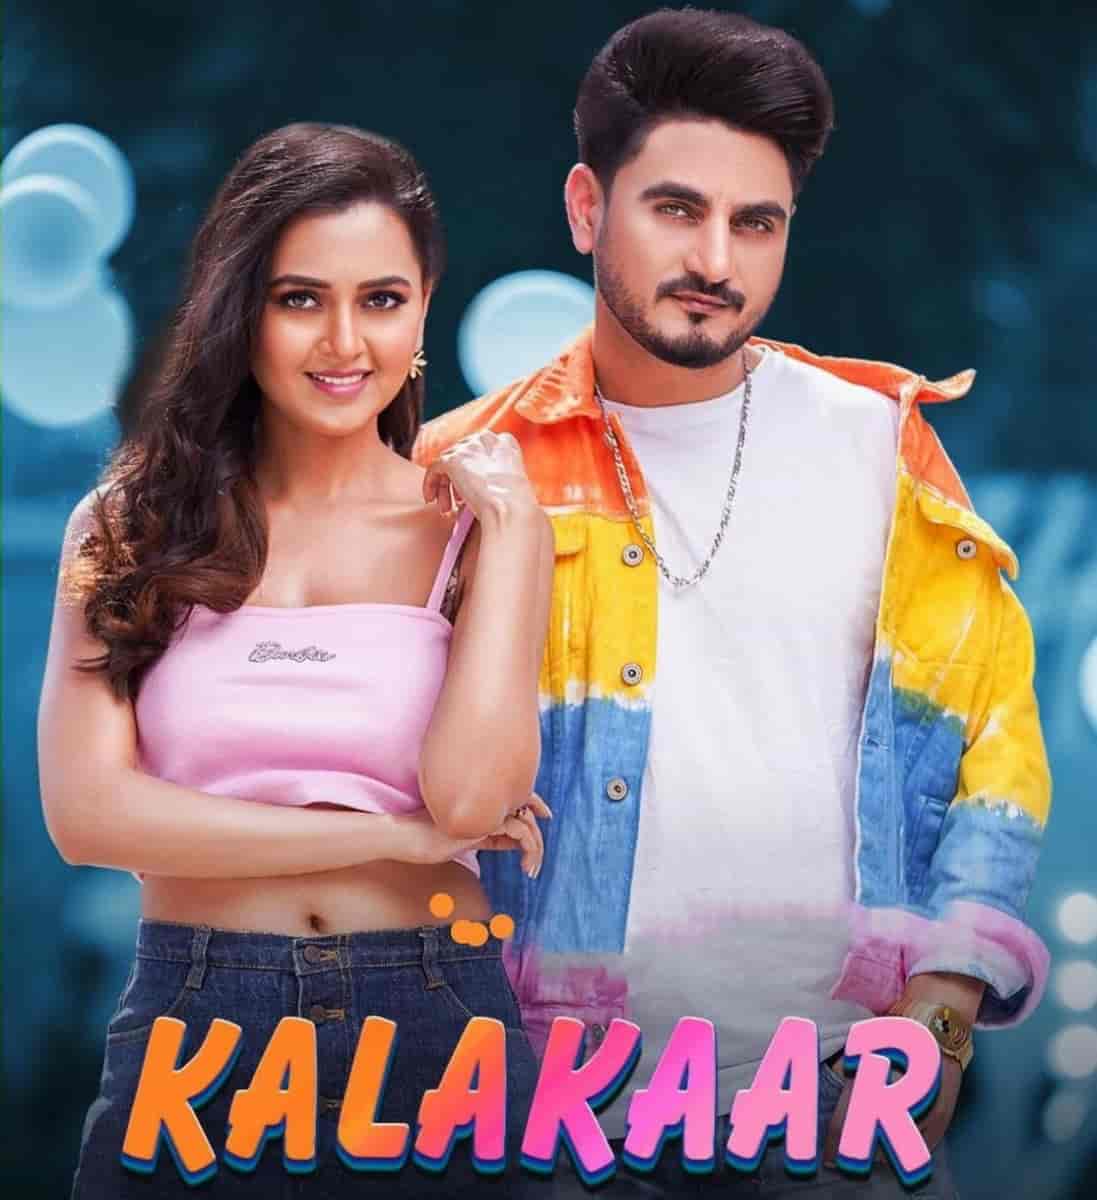 Kalakaar Punjabi Song Image Features Kulwinder Billa and Tejasswi Prakash